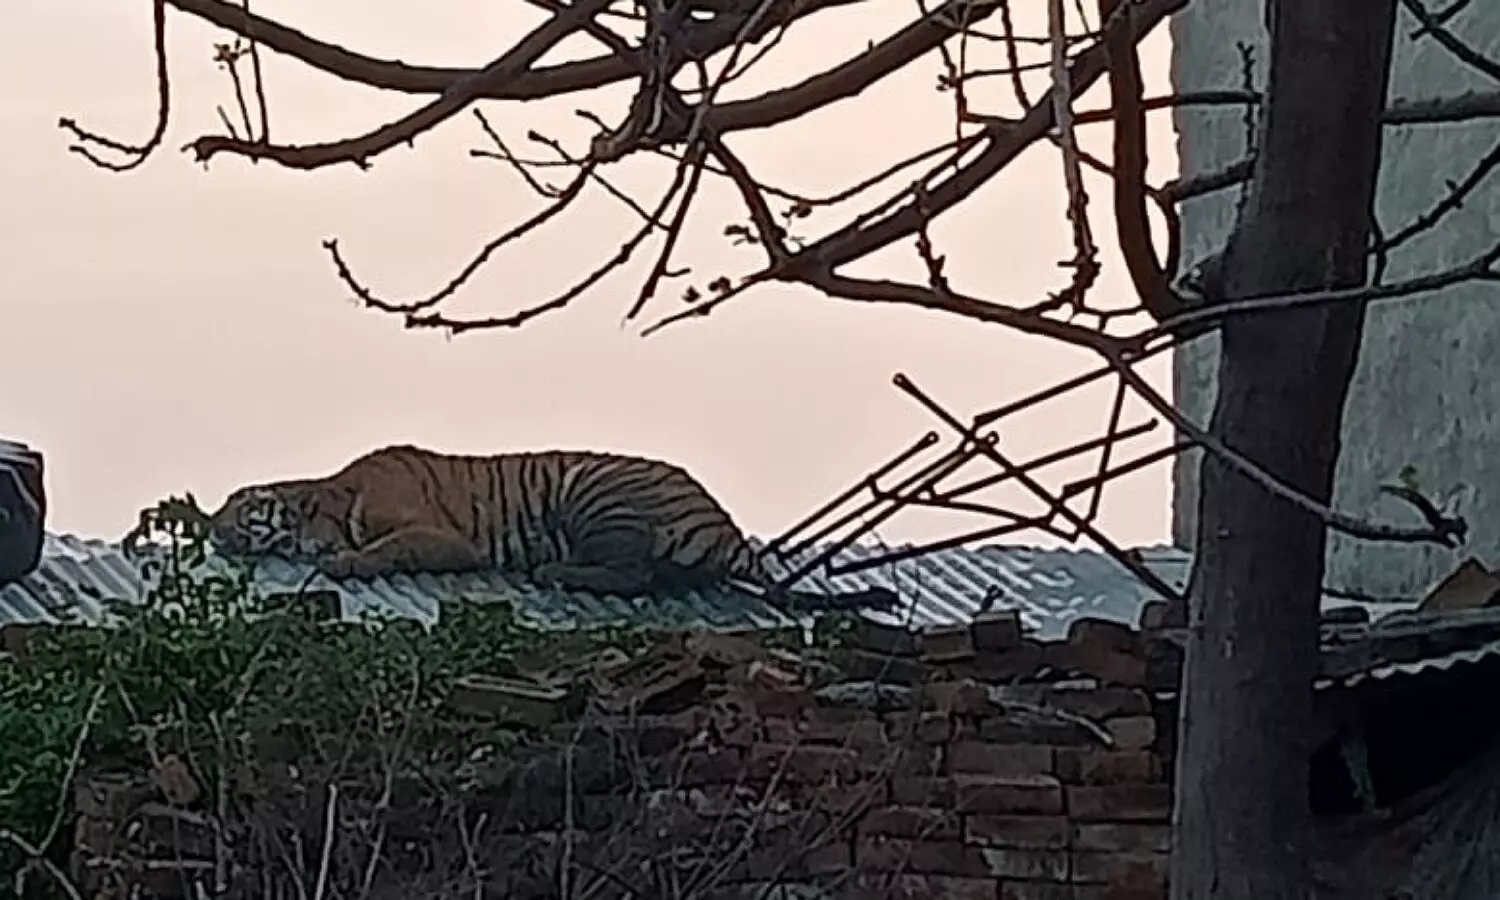 Tiger in Etah